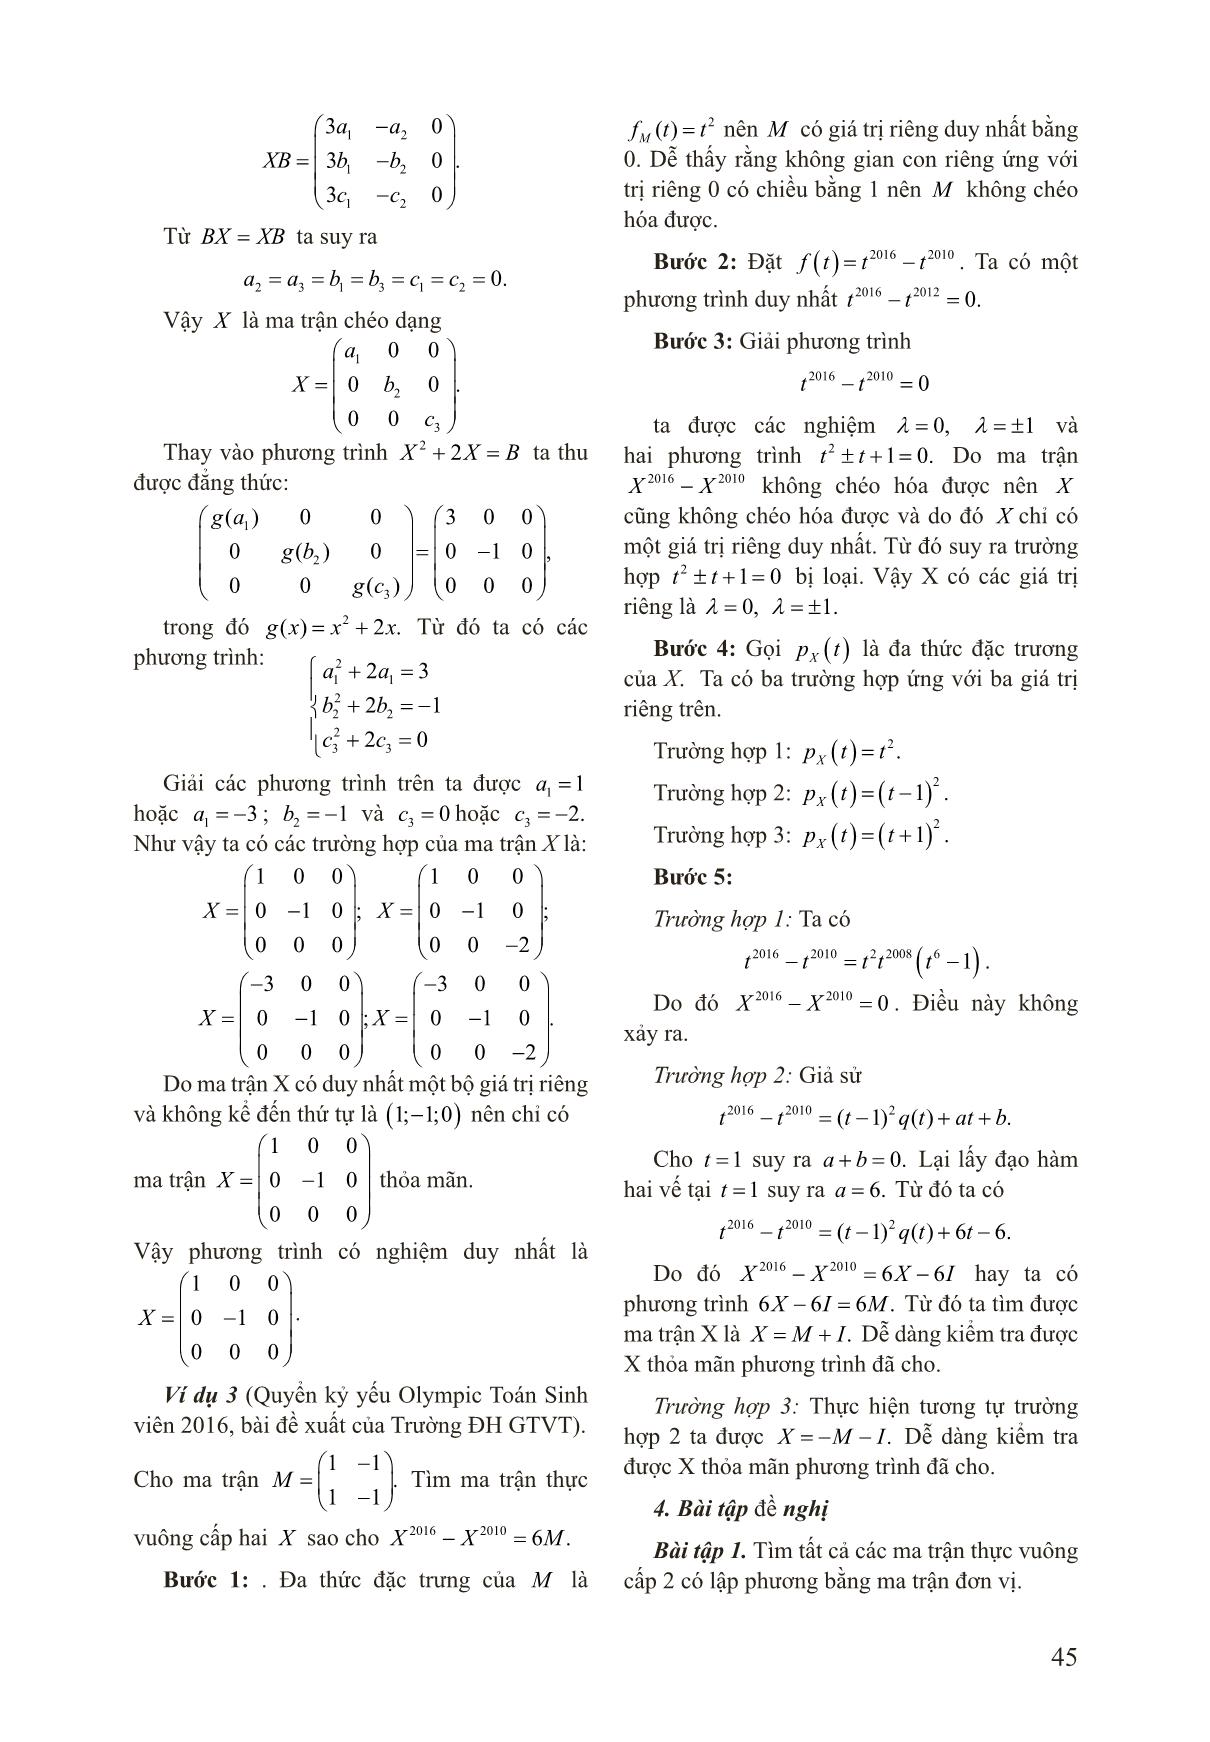 Áp dụng định lý Cayley - Hamilton vào giải phương trình ma trận trang 4